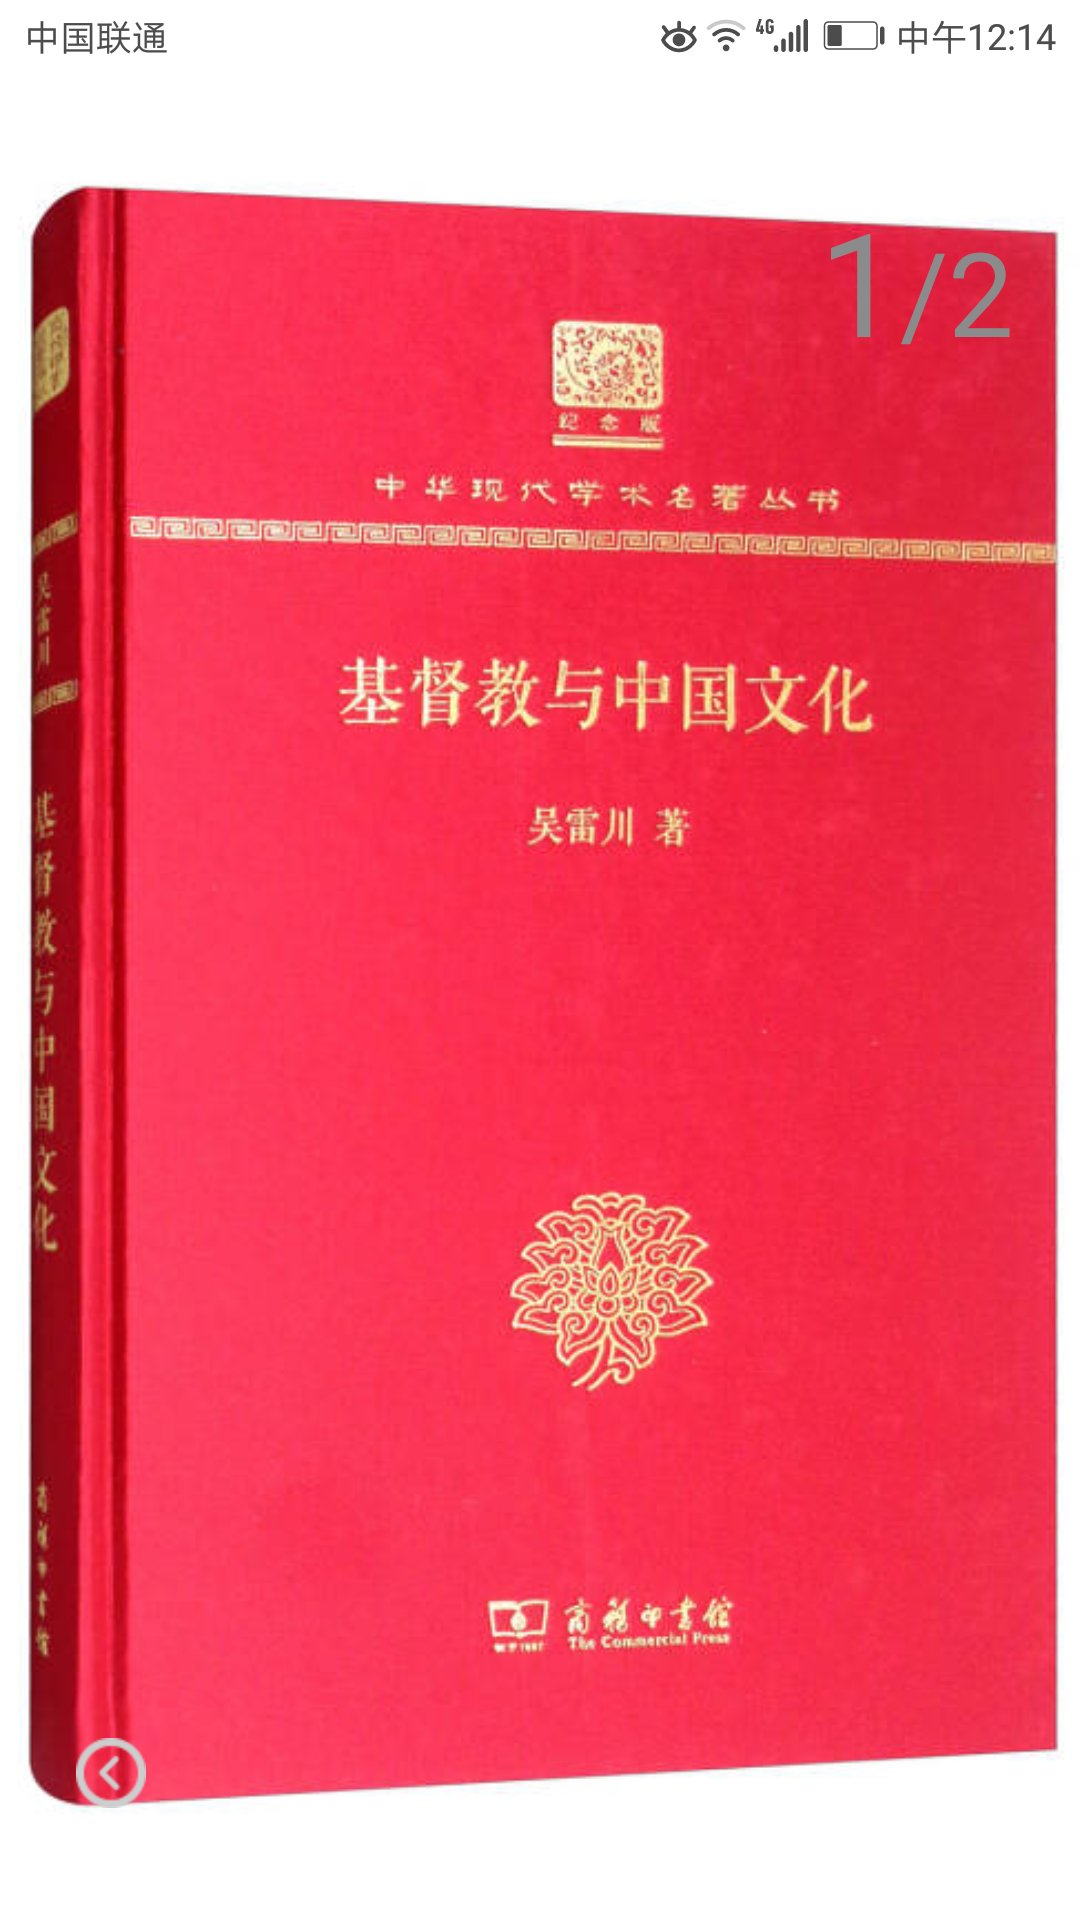 商务印刷馆推出的中华现代学术名著丛书，精装大16开，书脊锁线纸质优良，排版印刷得体大方，活动期间价格实惠，送货速度快，非常满意。